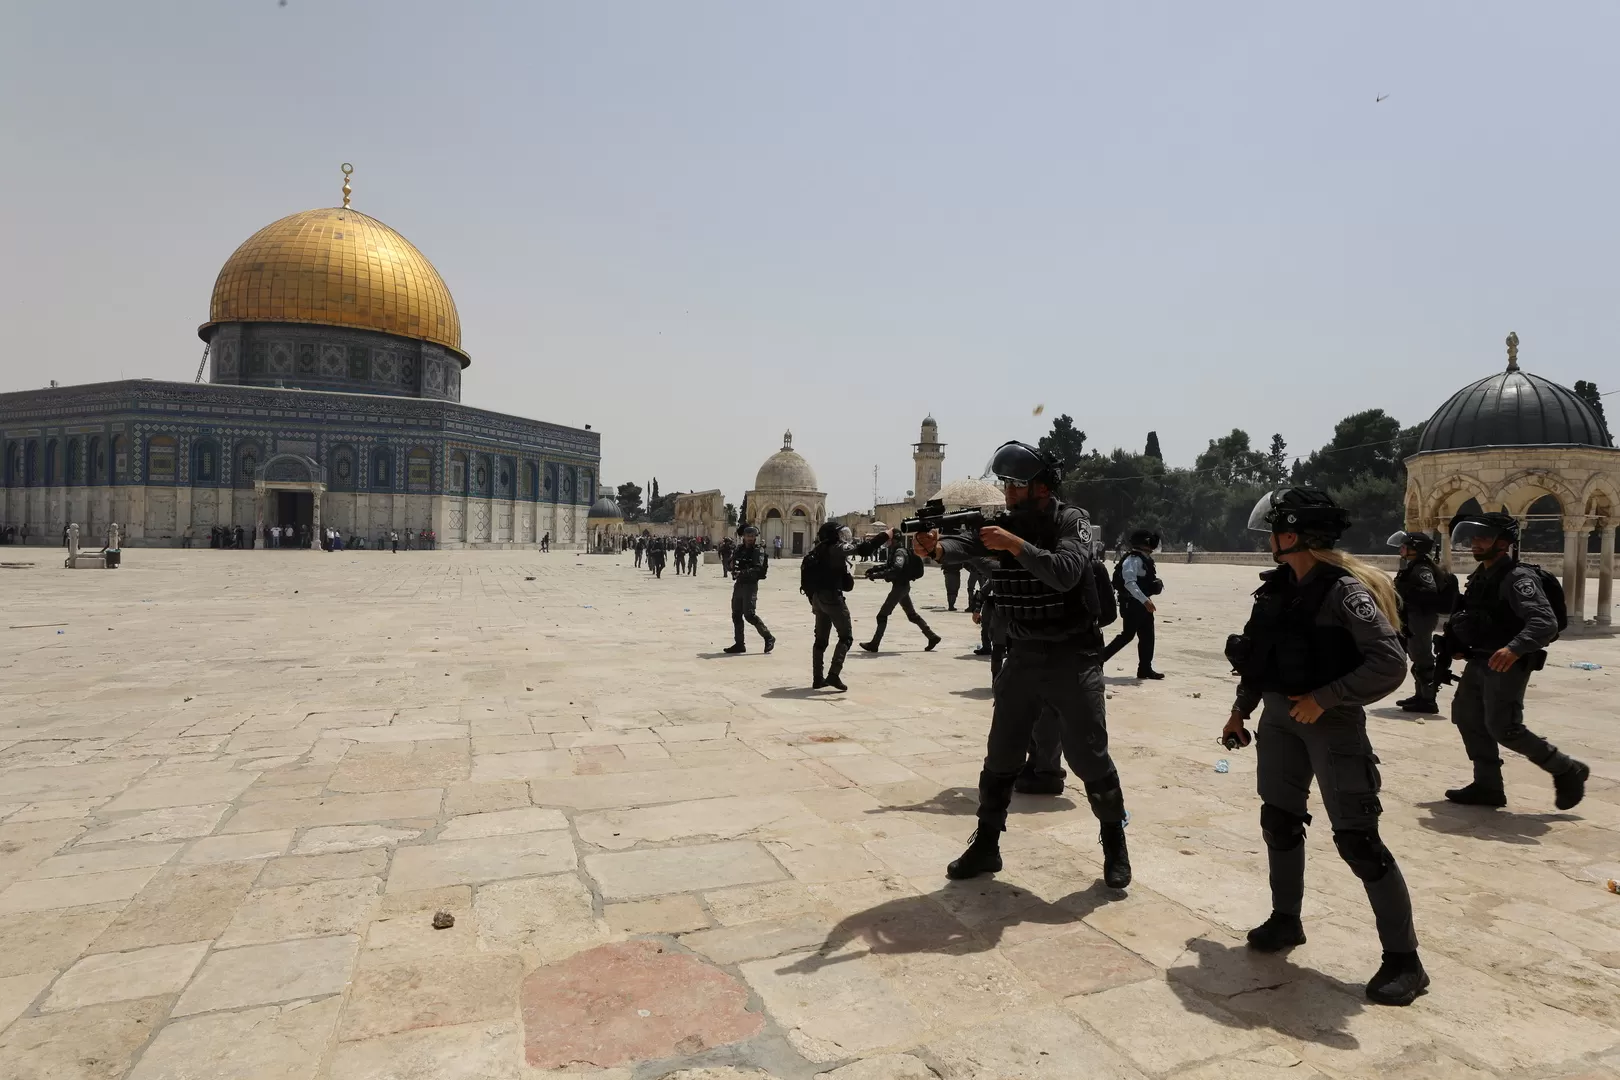 المسجد الأقصى,القدس,الاحتلال الإسرائيلي,الفصح اليهودي,المرابطين في الأقص